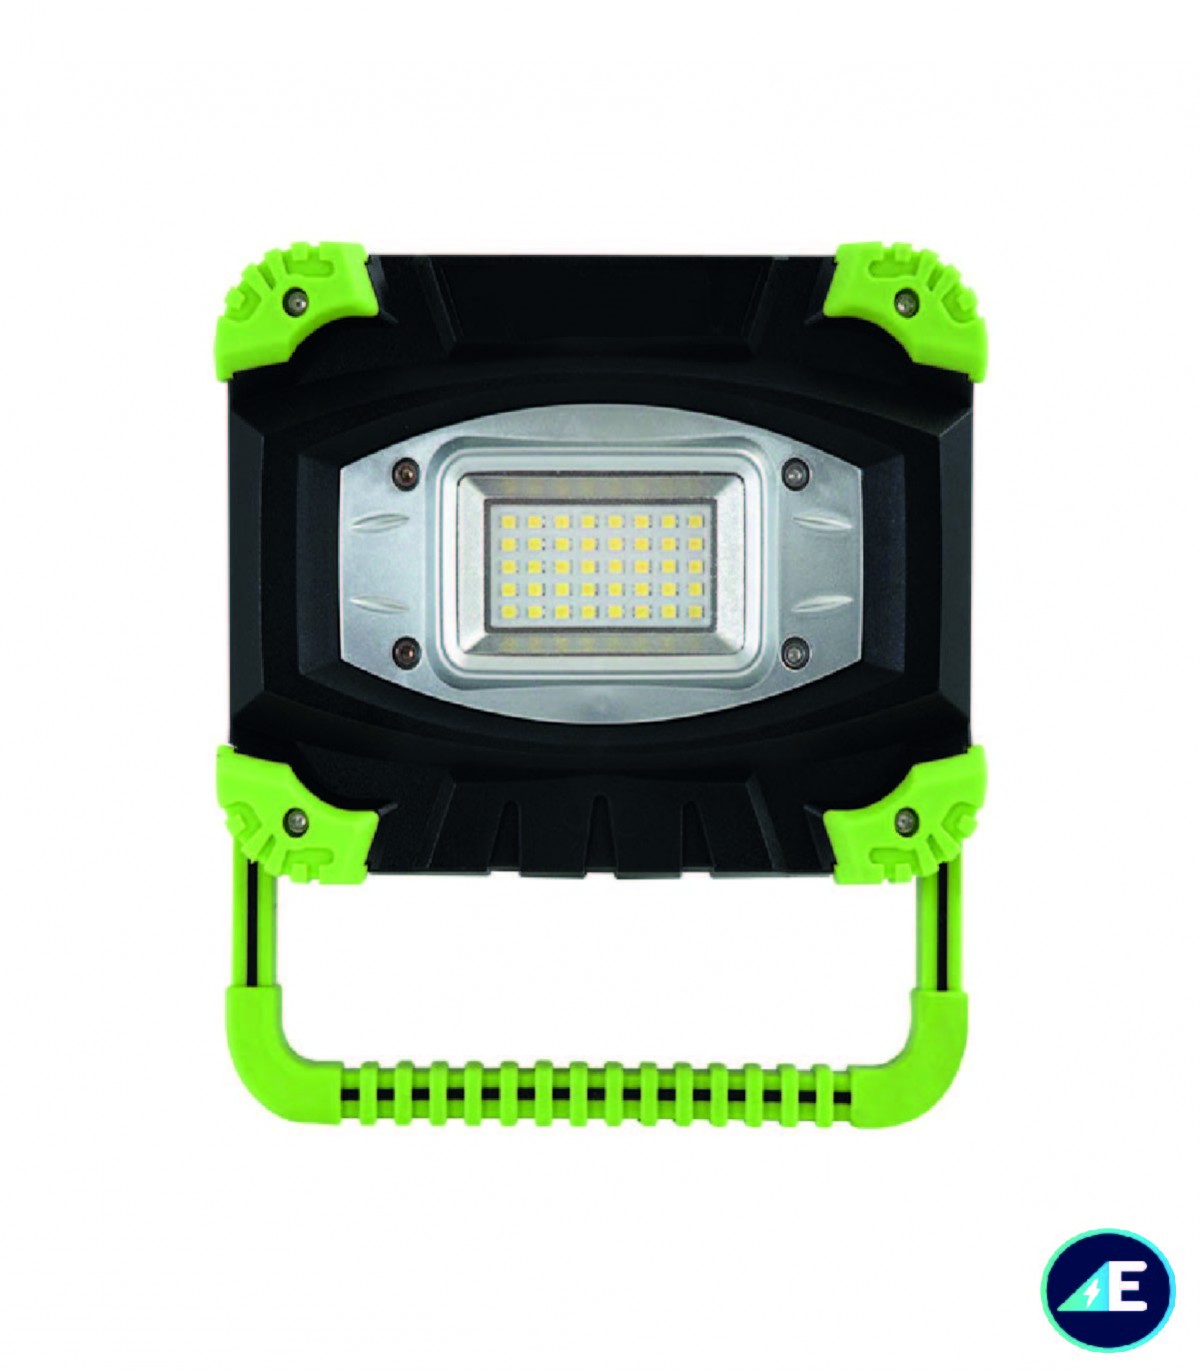 Proyector LED móvil de 500 lúmenes con batería recargable + trípode  extensible con soporte para smartphone - 4smarts - Spain